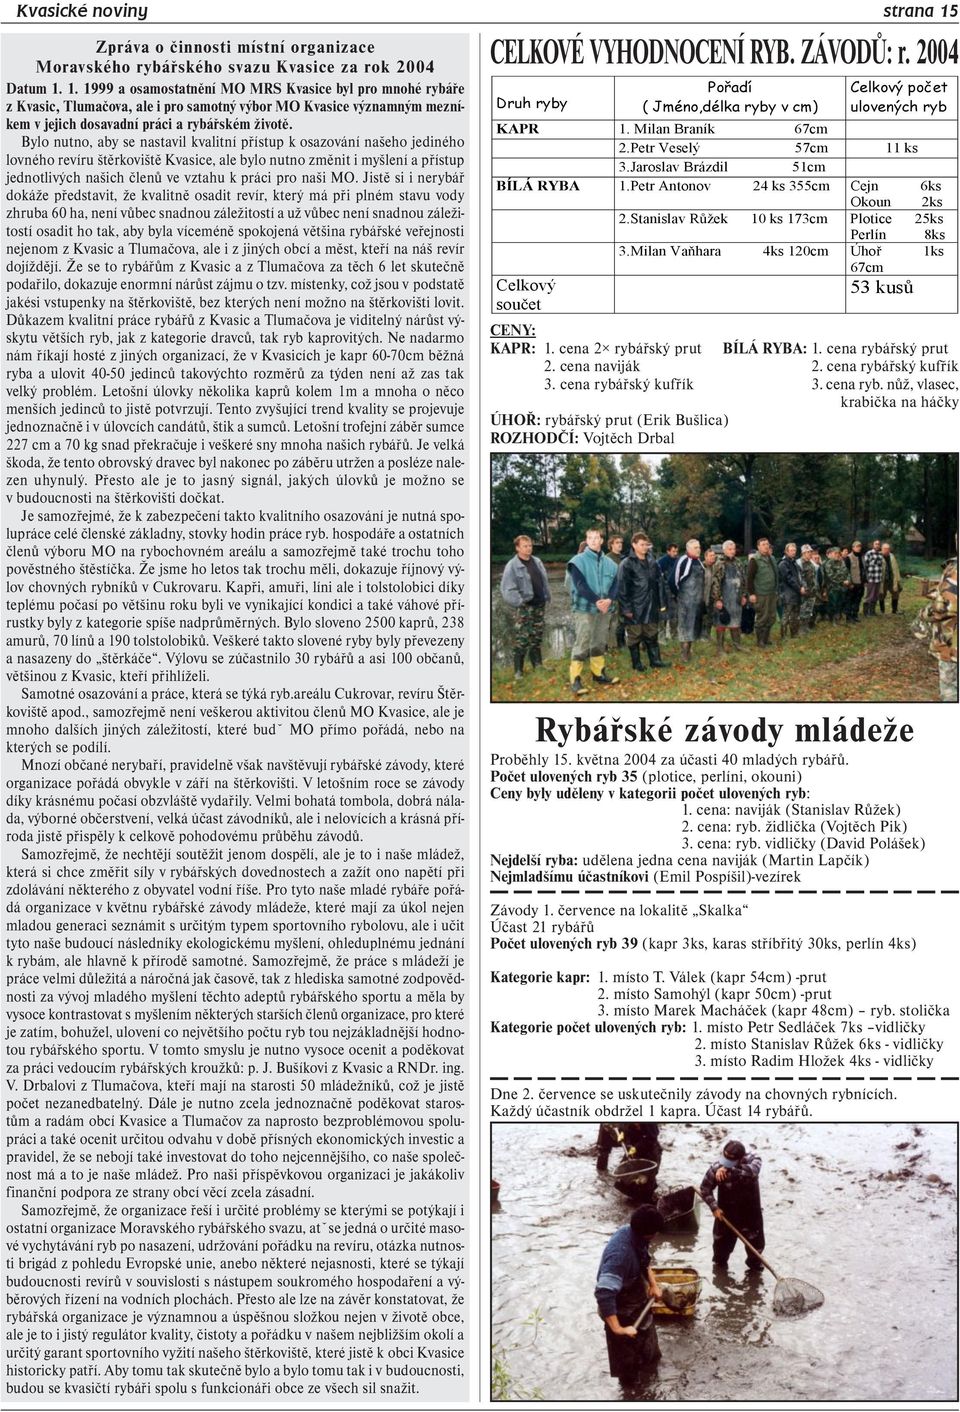 1. 1999 a osamostatnění MO MRS Kvasice byl pro mnohé rybáře z Kvasic, Tlumačova, ale i pro samotný výbor MO Kvasice významným mezníkem v jejich dosavadní práci a rybářském životě.